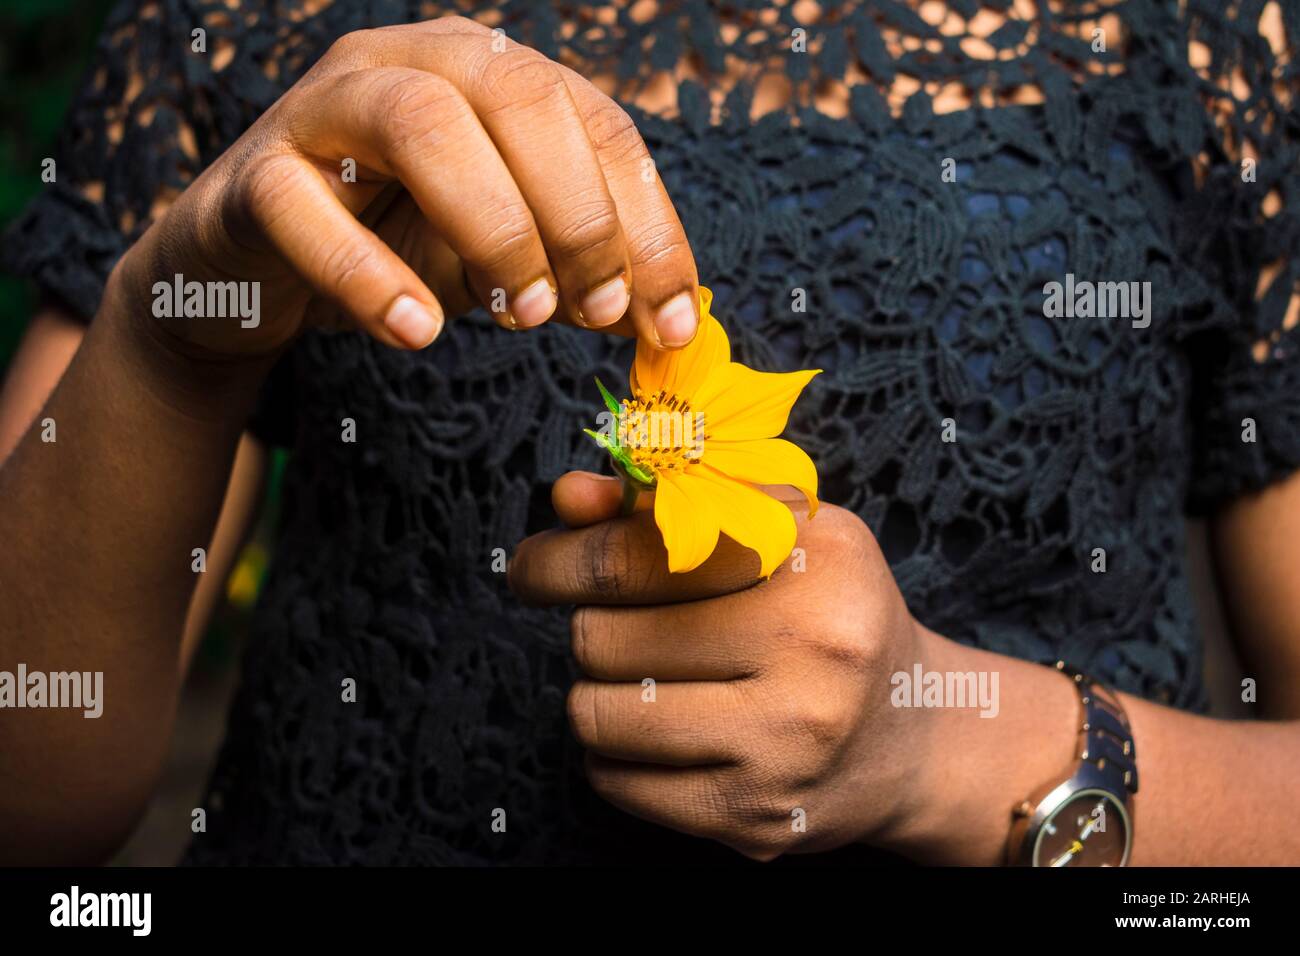 Die junge schwarze Dame, die eine Sonnenblume hält, pflücken die Petalen einzeln. Sie liebt mich, sie liebt mich nicht Stockfoto